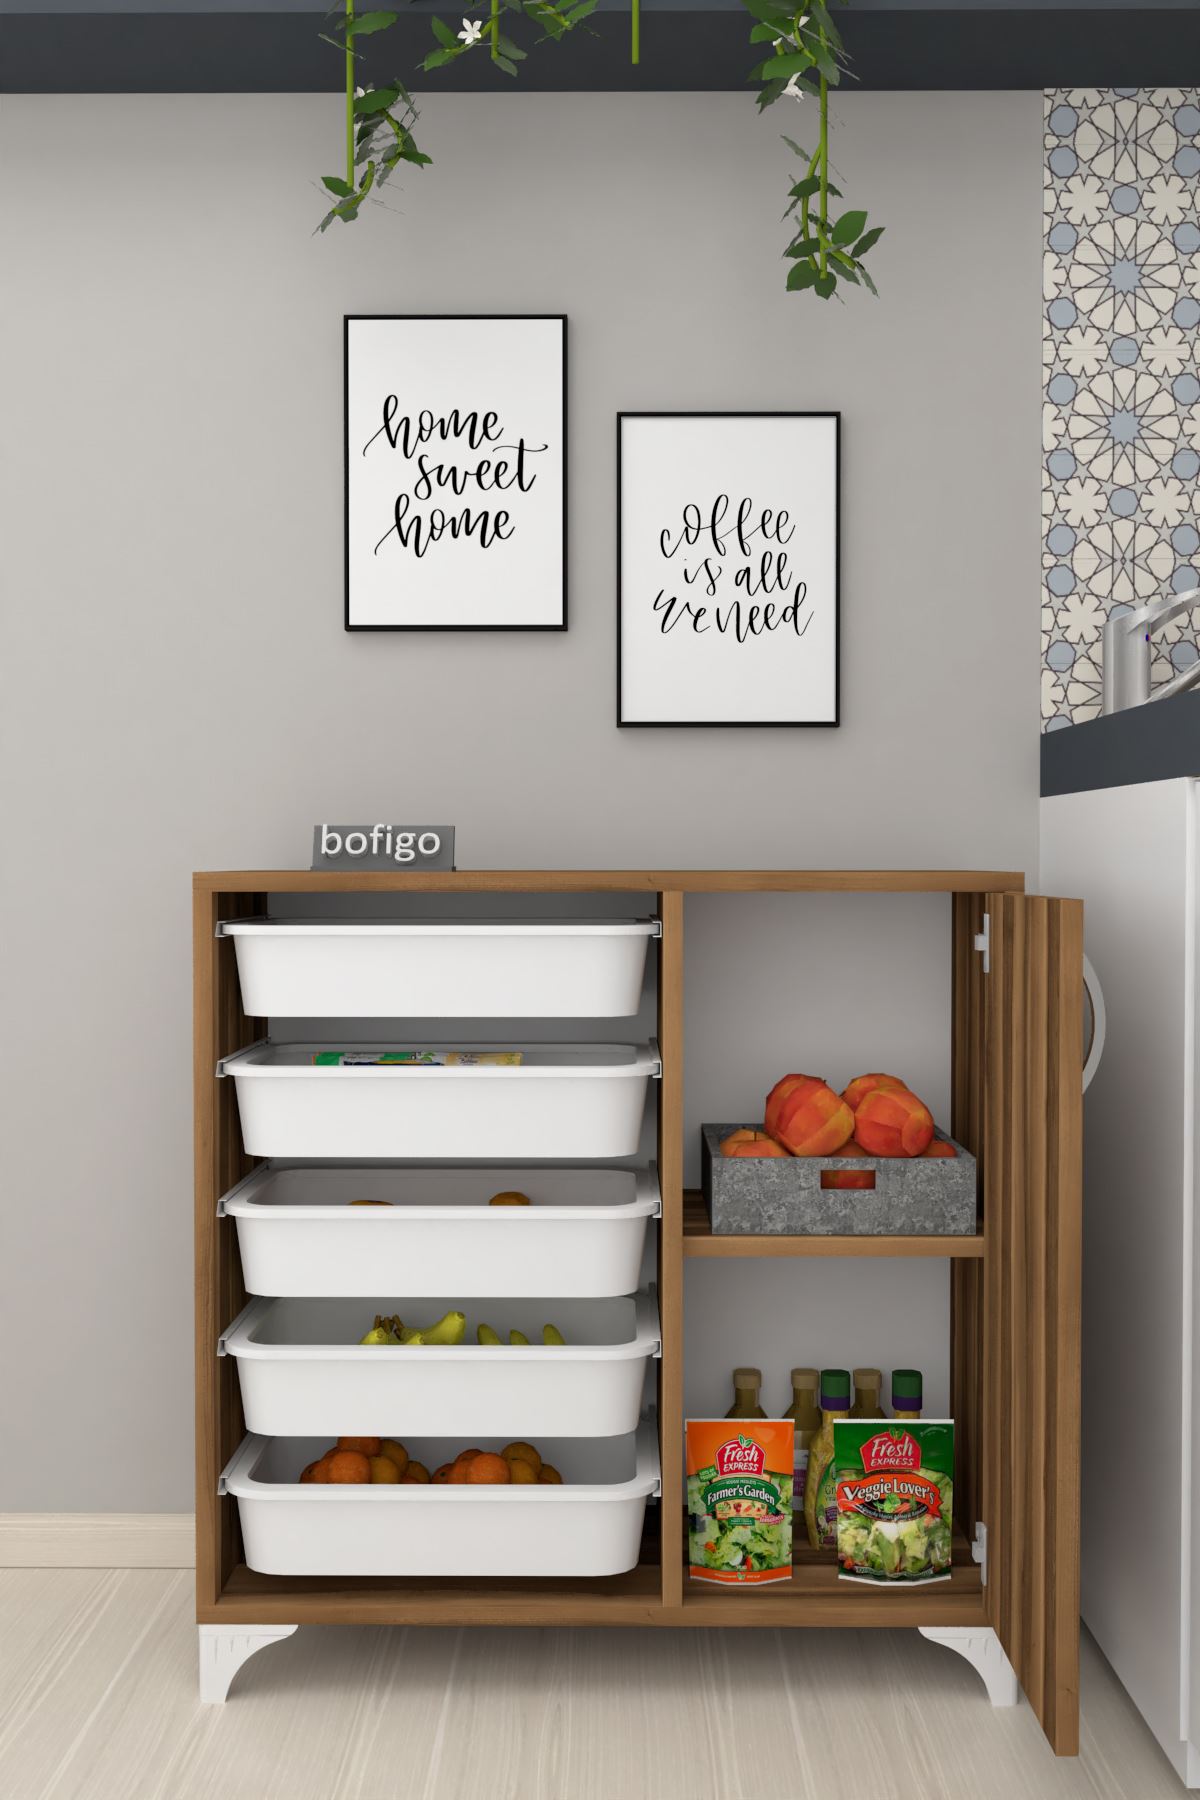 Bofigo 5 Basket Kitchen Cabinet Multi-Purpose Cabinet Crisper Pine